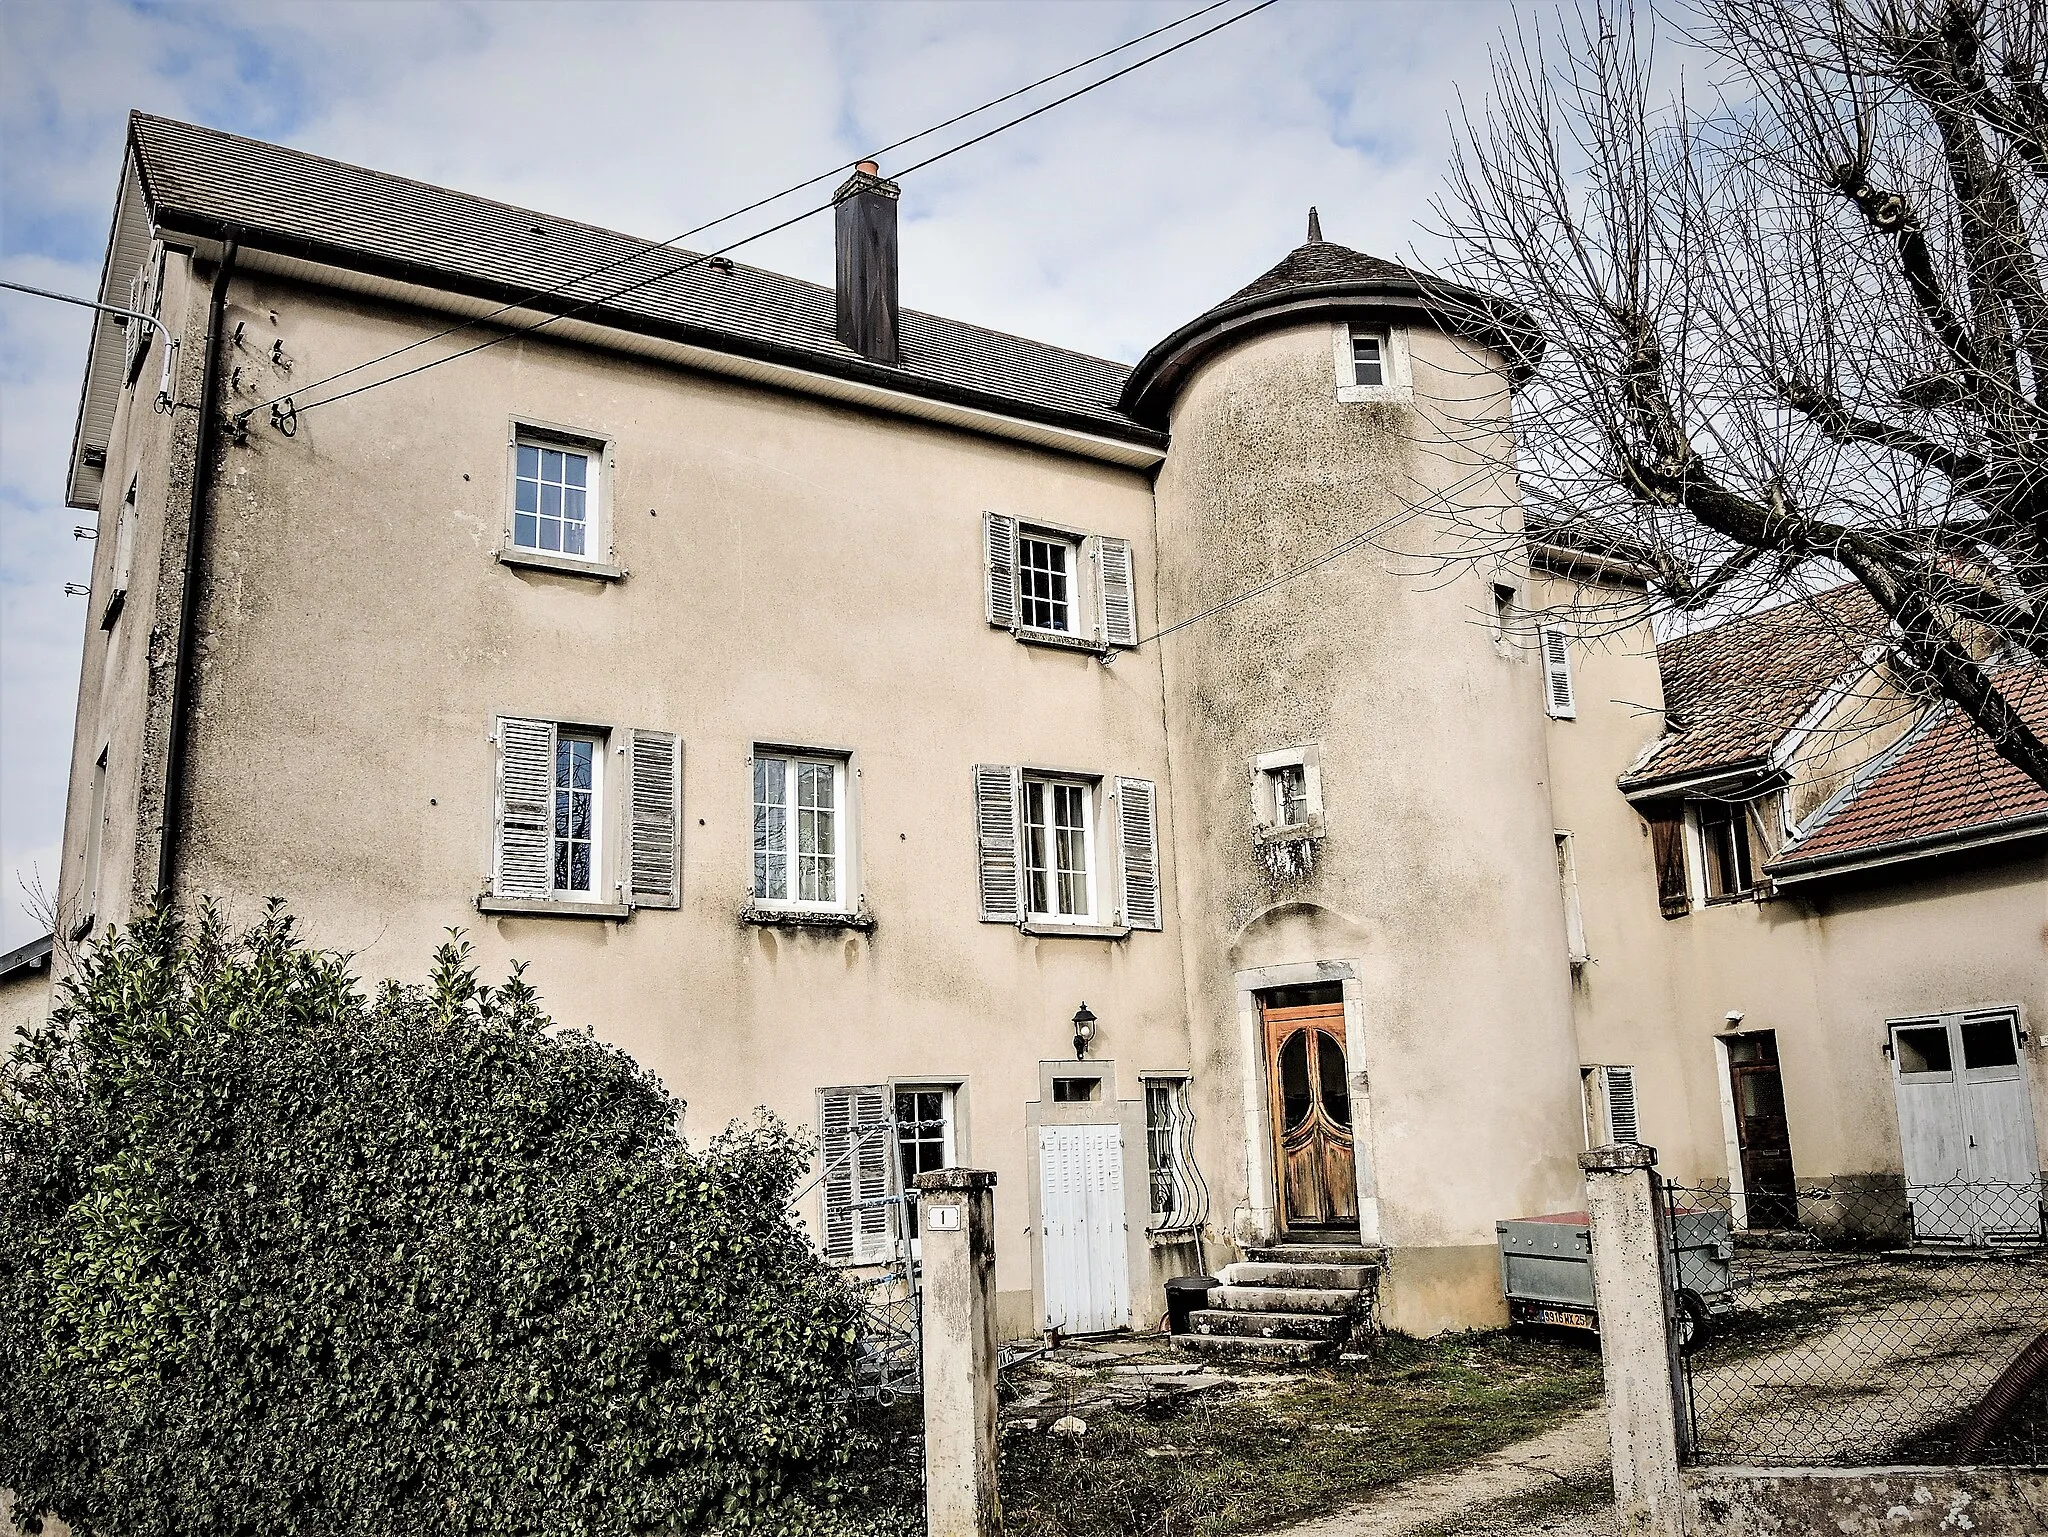 Photo showing: Maison avec tourelle.